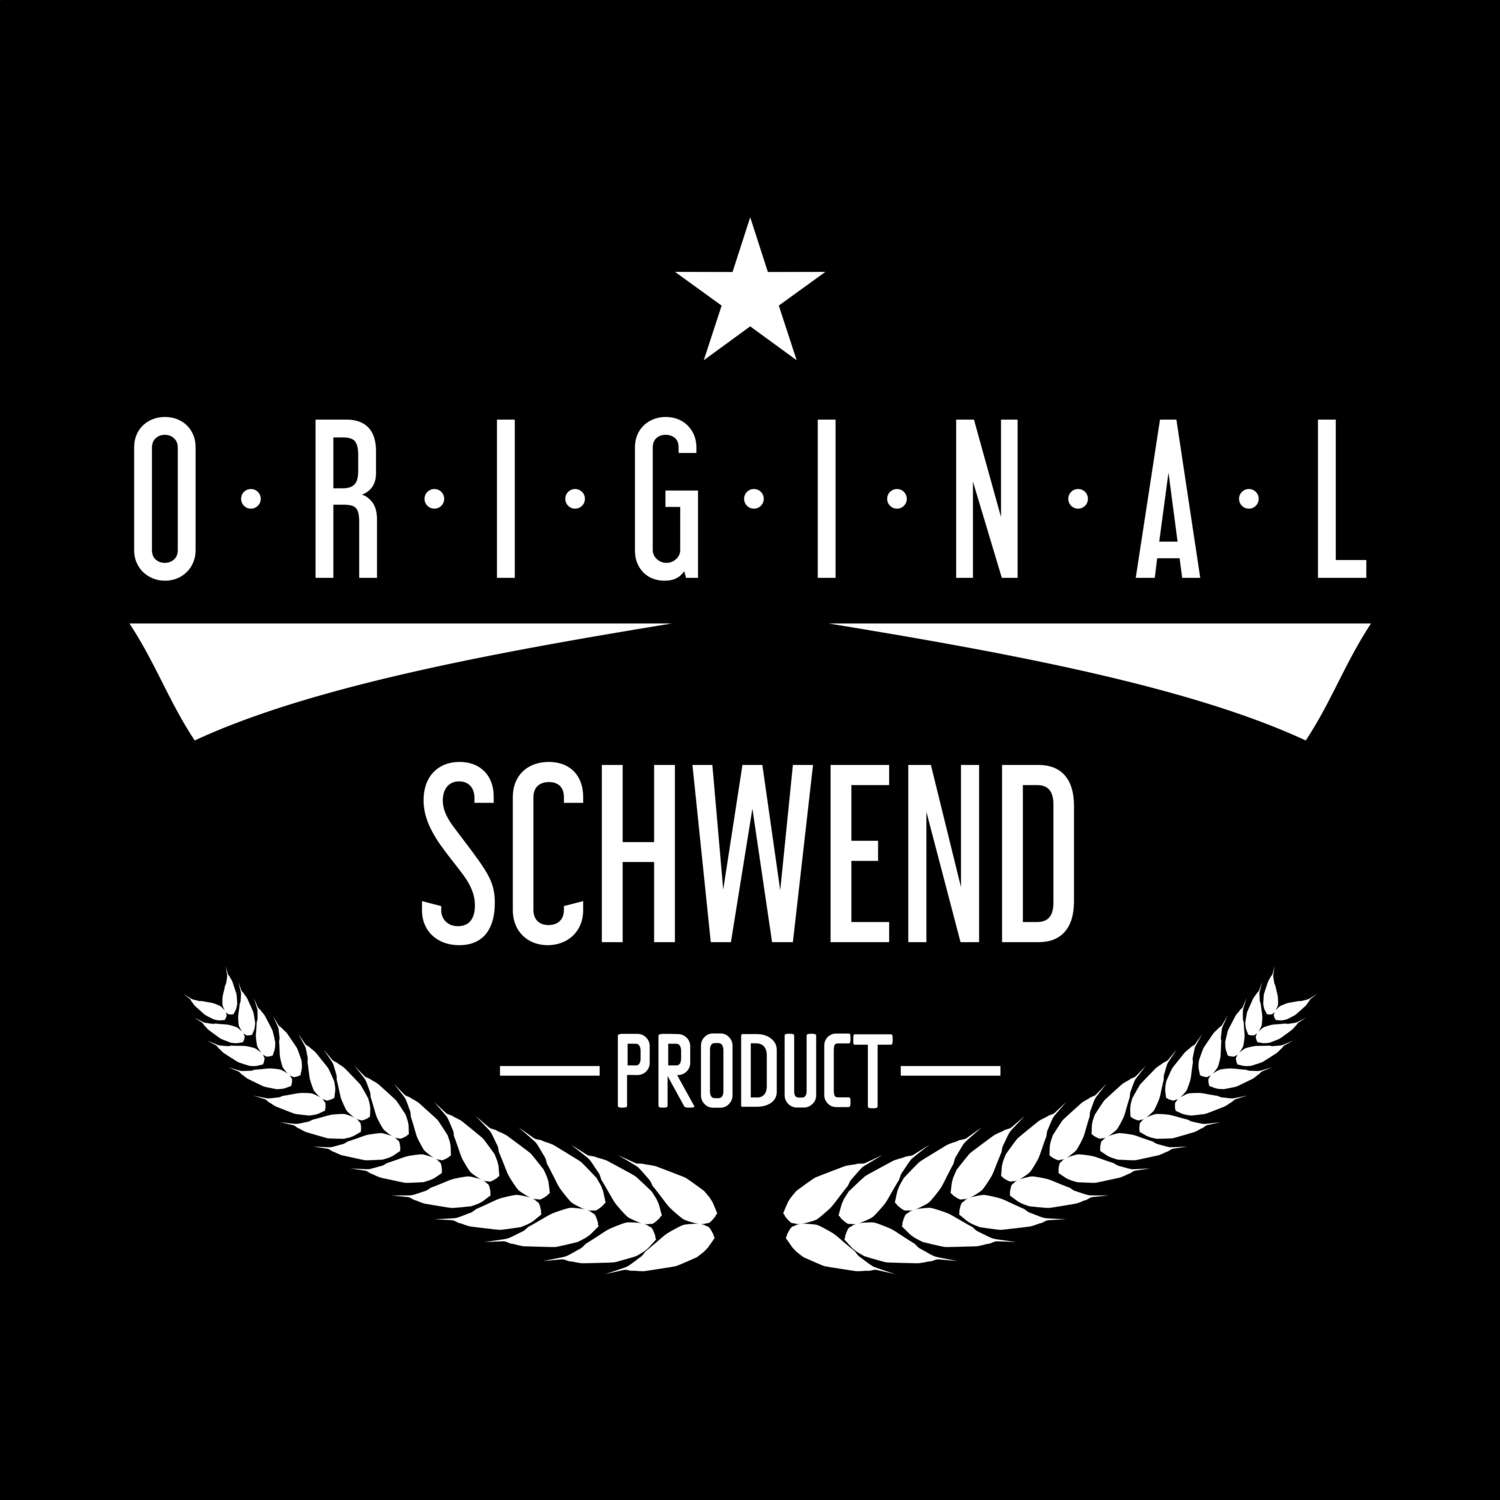 Schwend T-Shirt »Original Product«